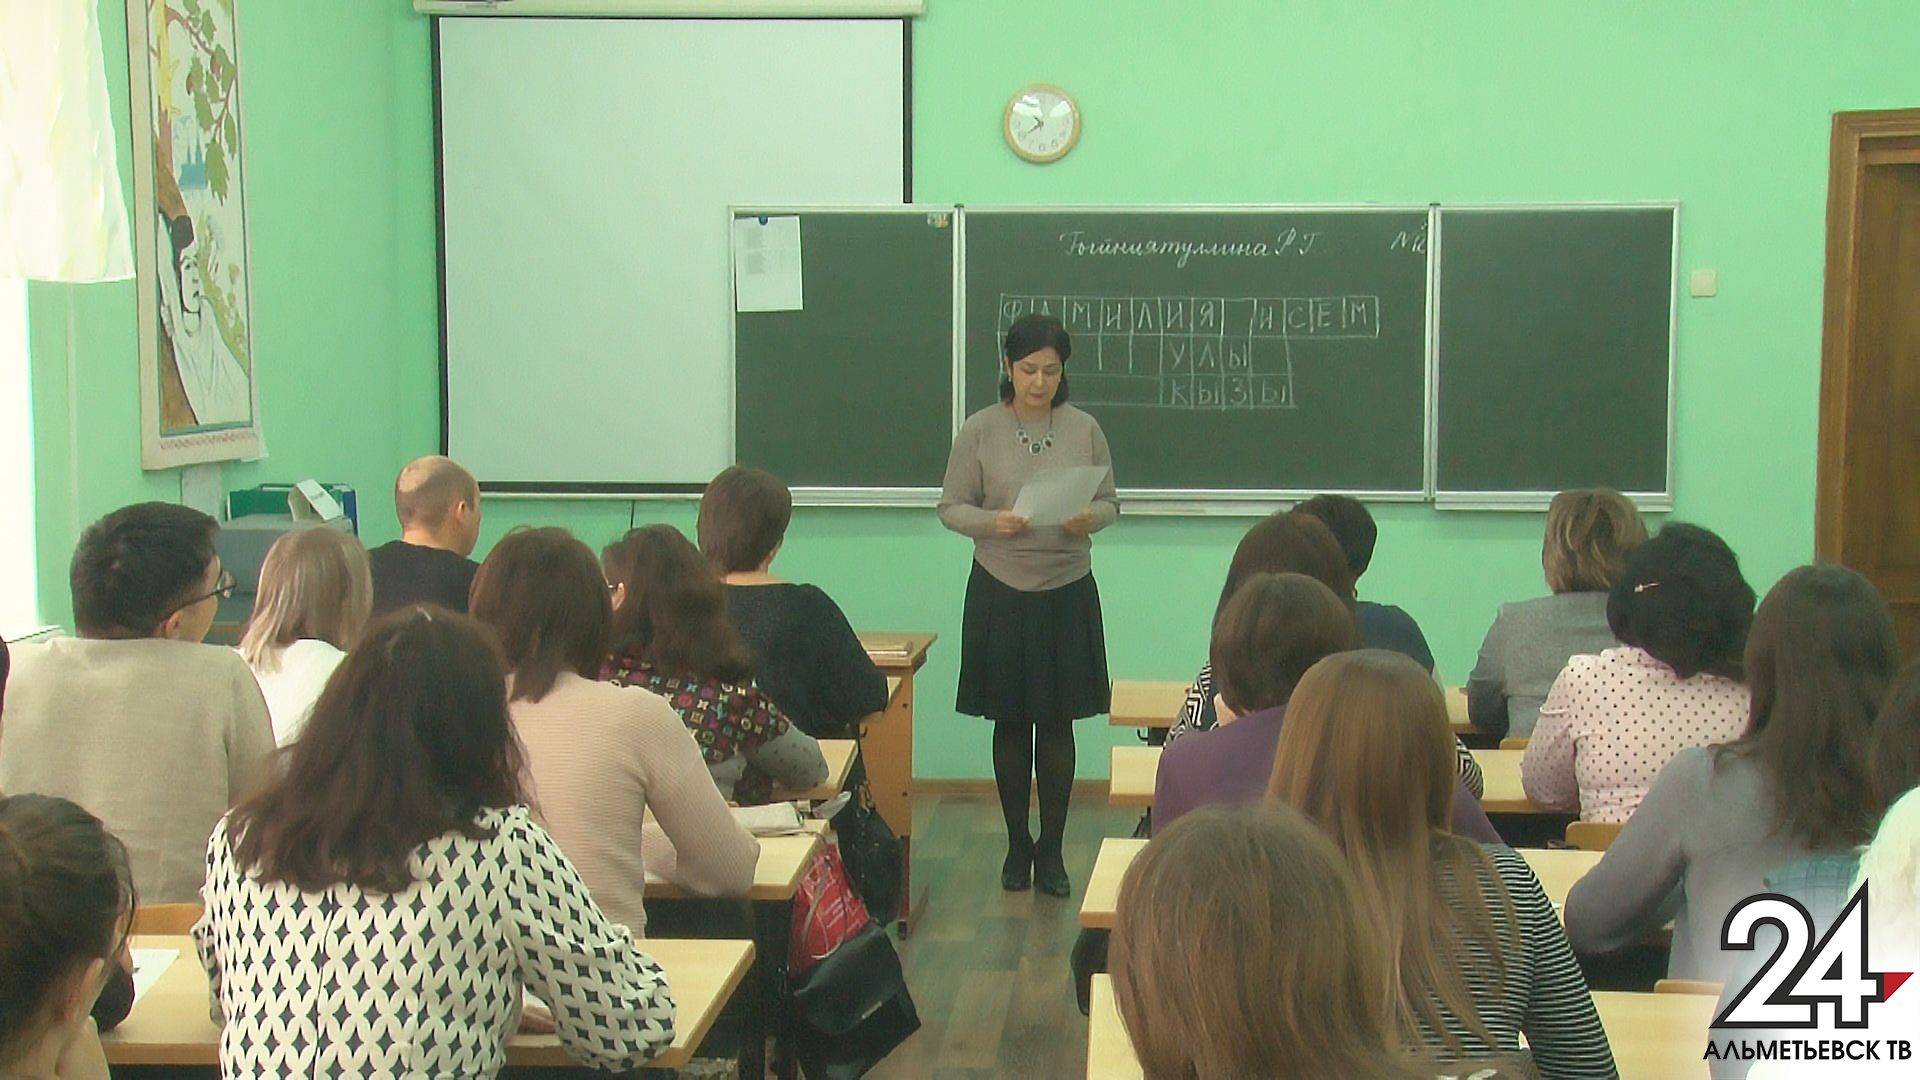 Алексей Пашкуров: преподаватели на уроках русской литературы должны использовать творческий подход.